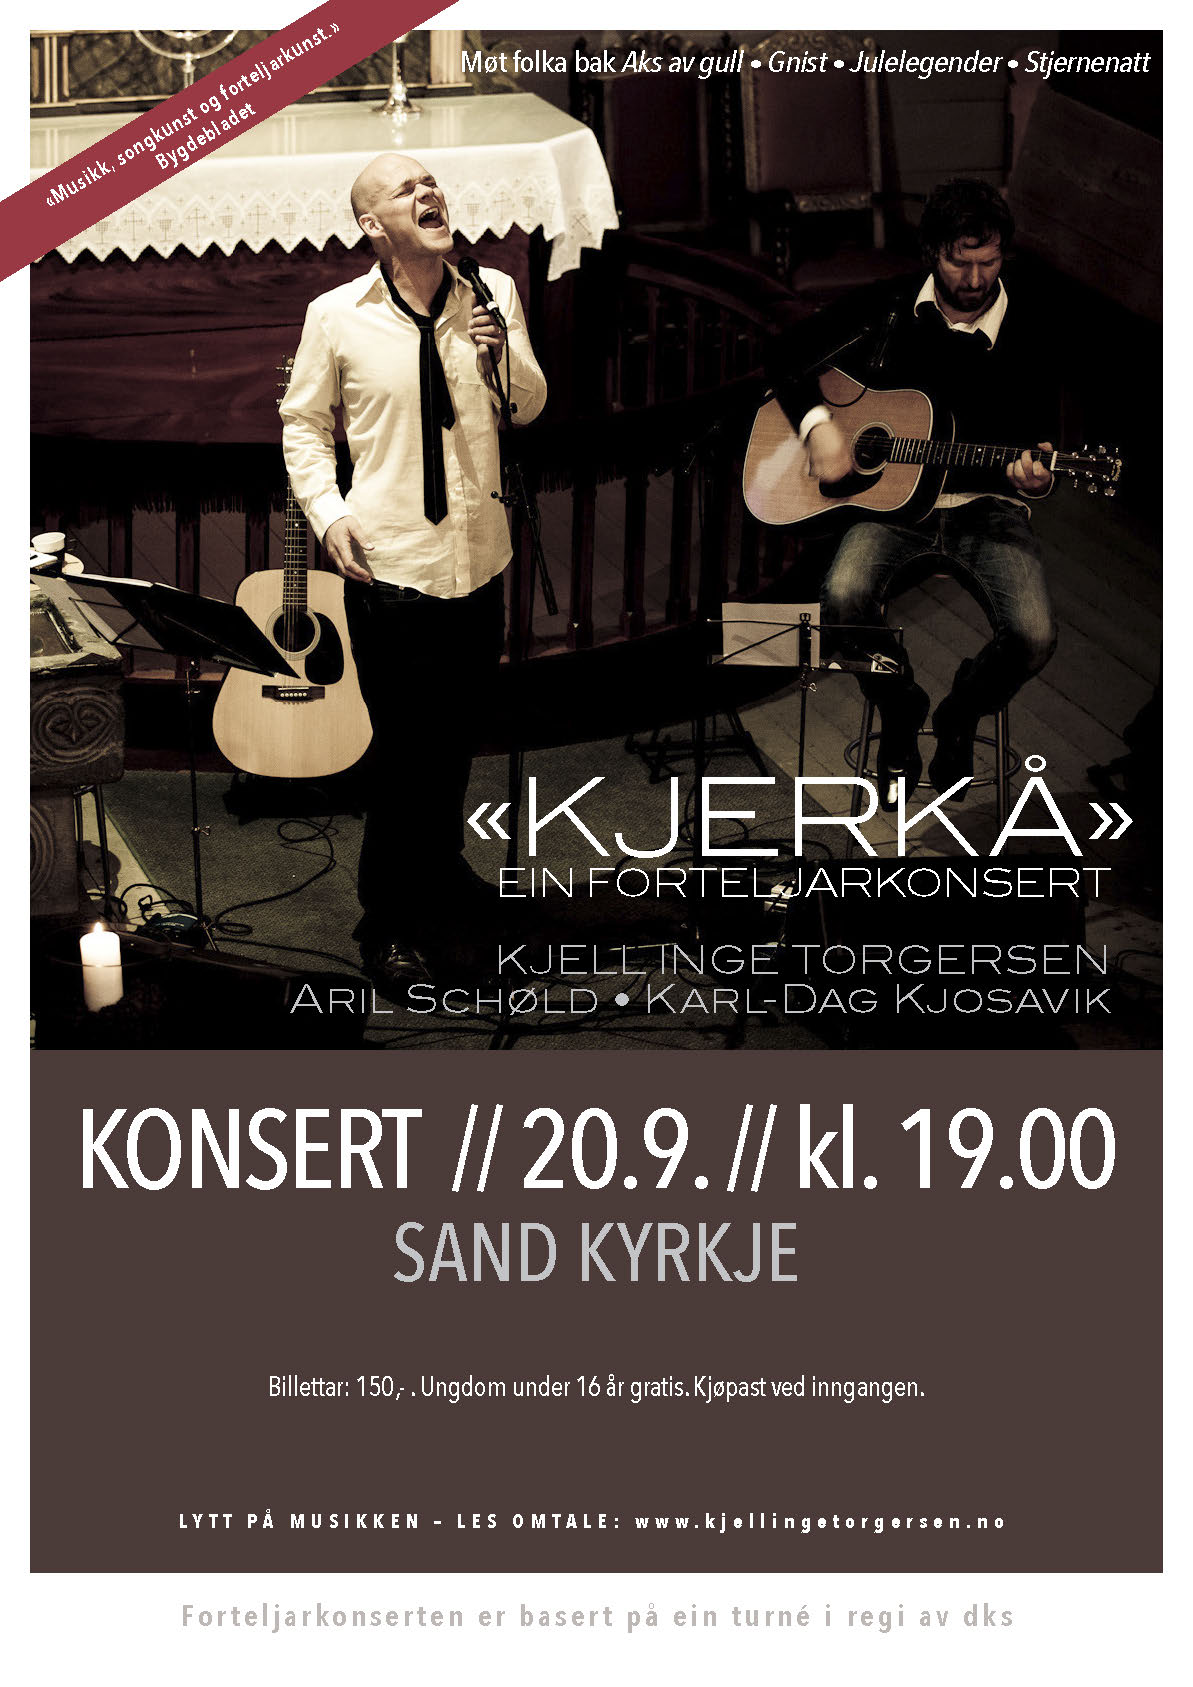 Kjerkå – ein forteljarkonsert i Sand kyrkje 20.9.16